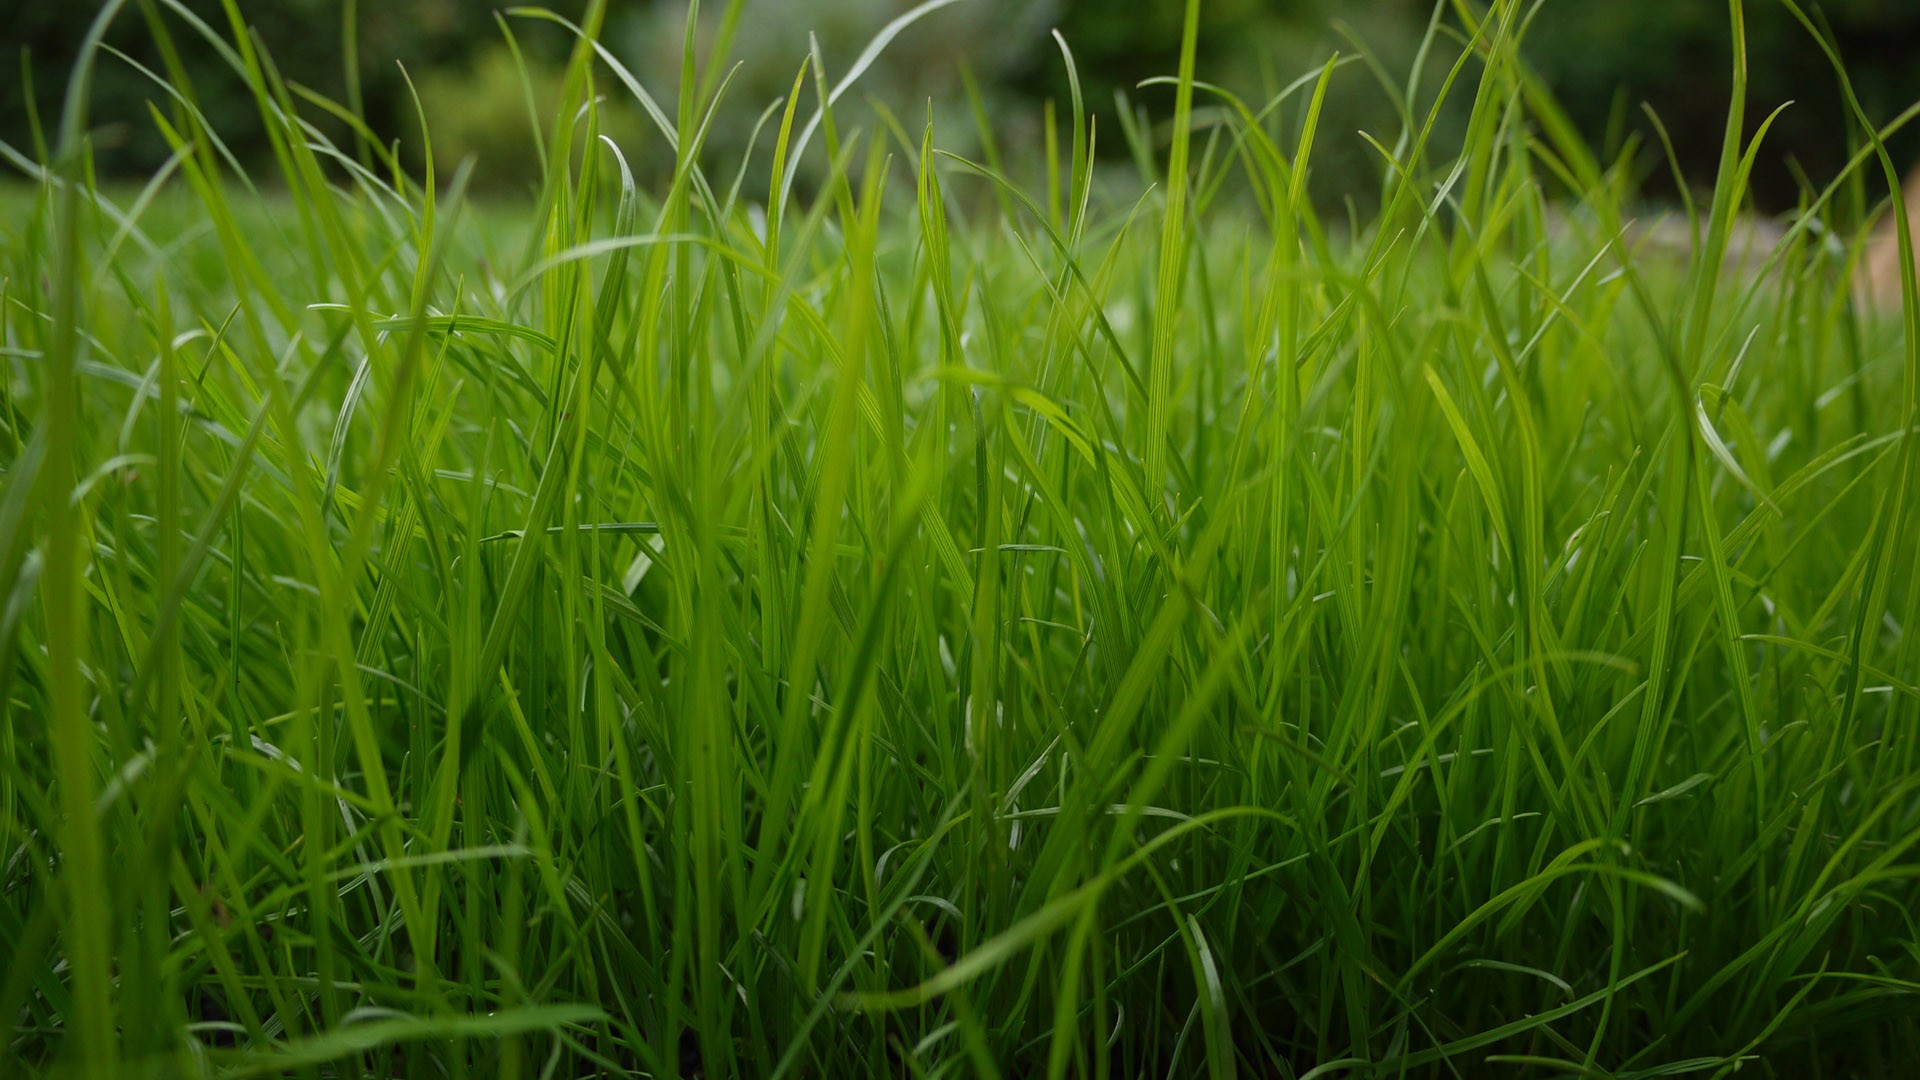 Green Wallpaper Grass Image